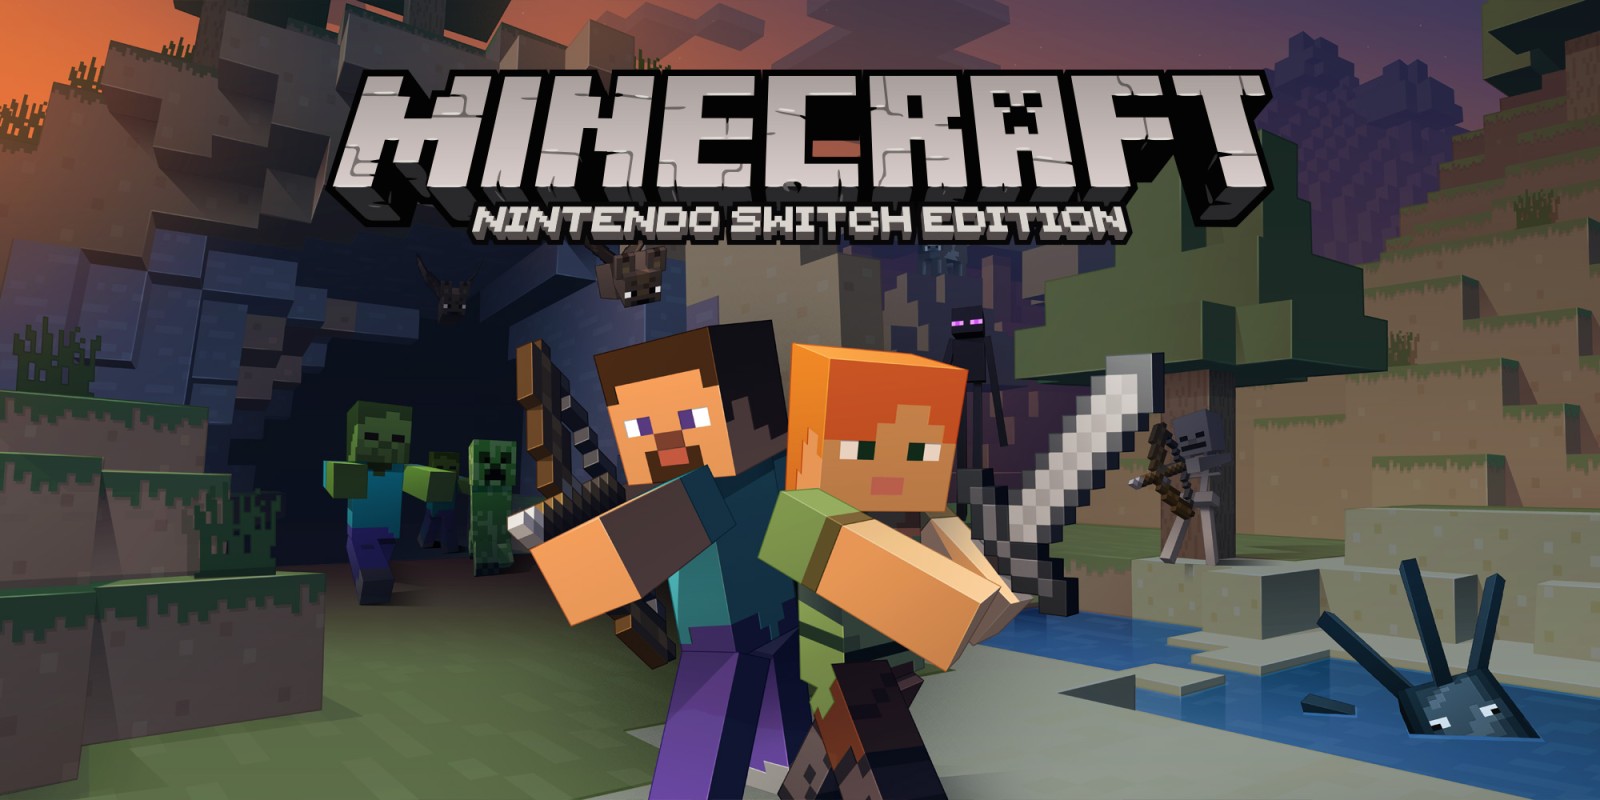 Minecraft: Nintendo Switch Edition, Jogos para a Nintendo Switch, Jogos